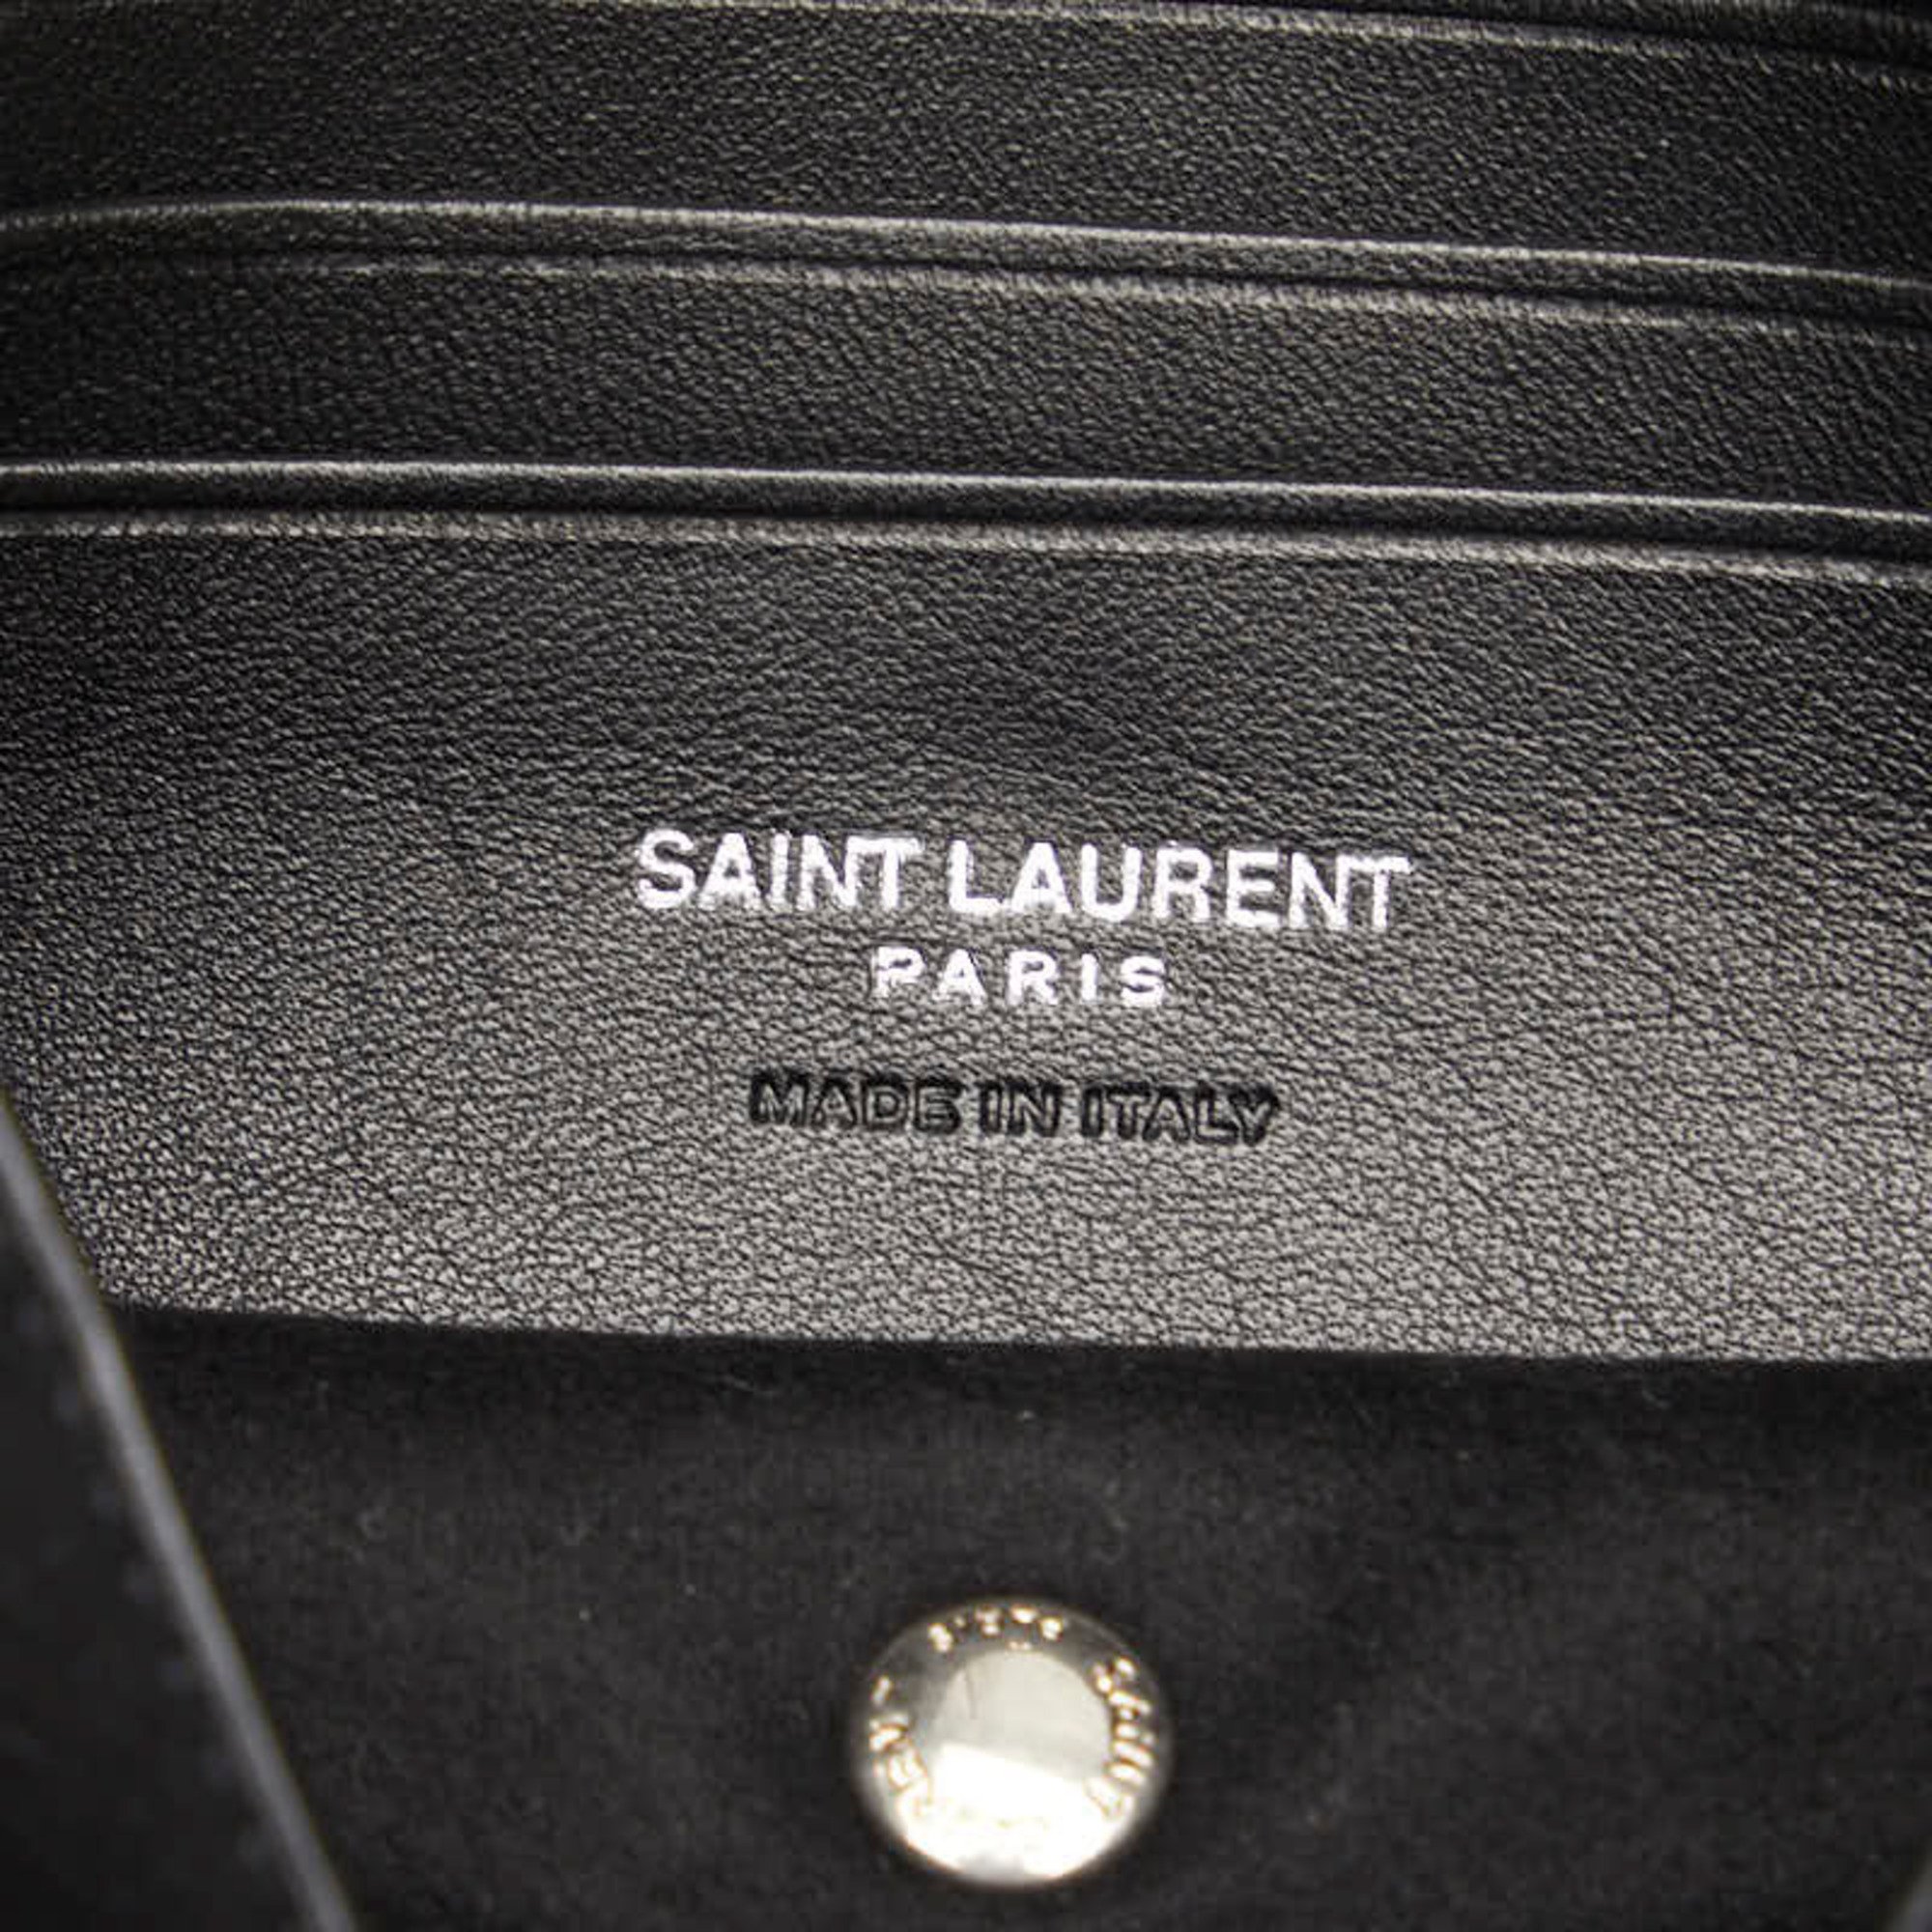 Saint Laurent Teddy Small Chain Shoulder Bag 583328 Ivory White Leather Women's SAINT LAURENT